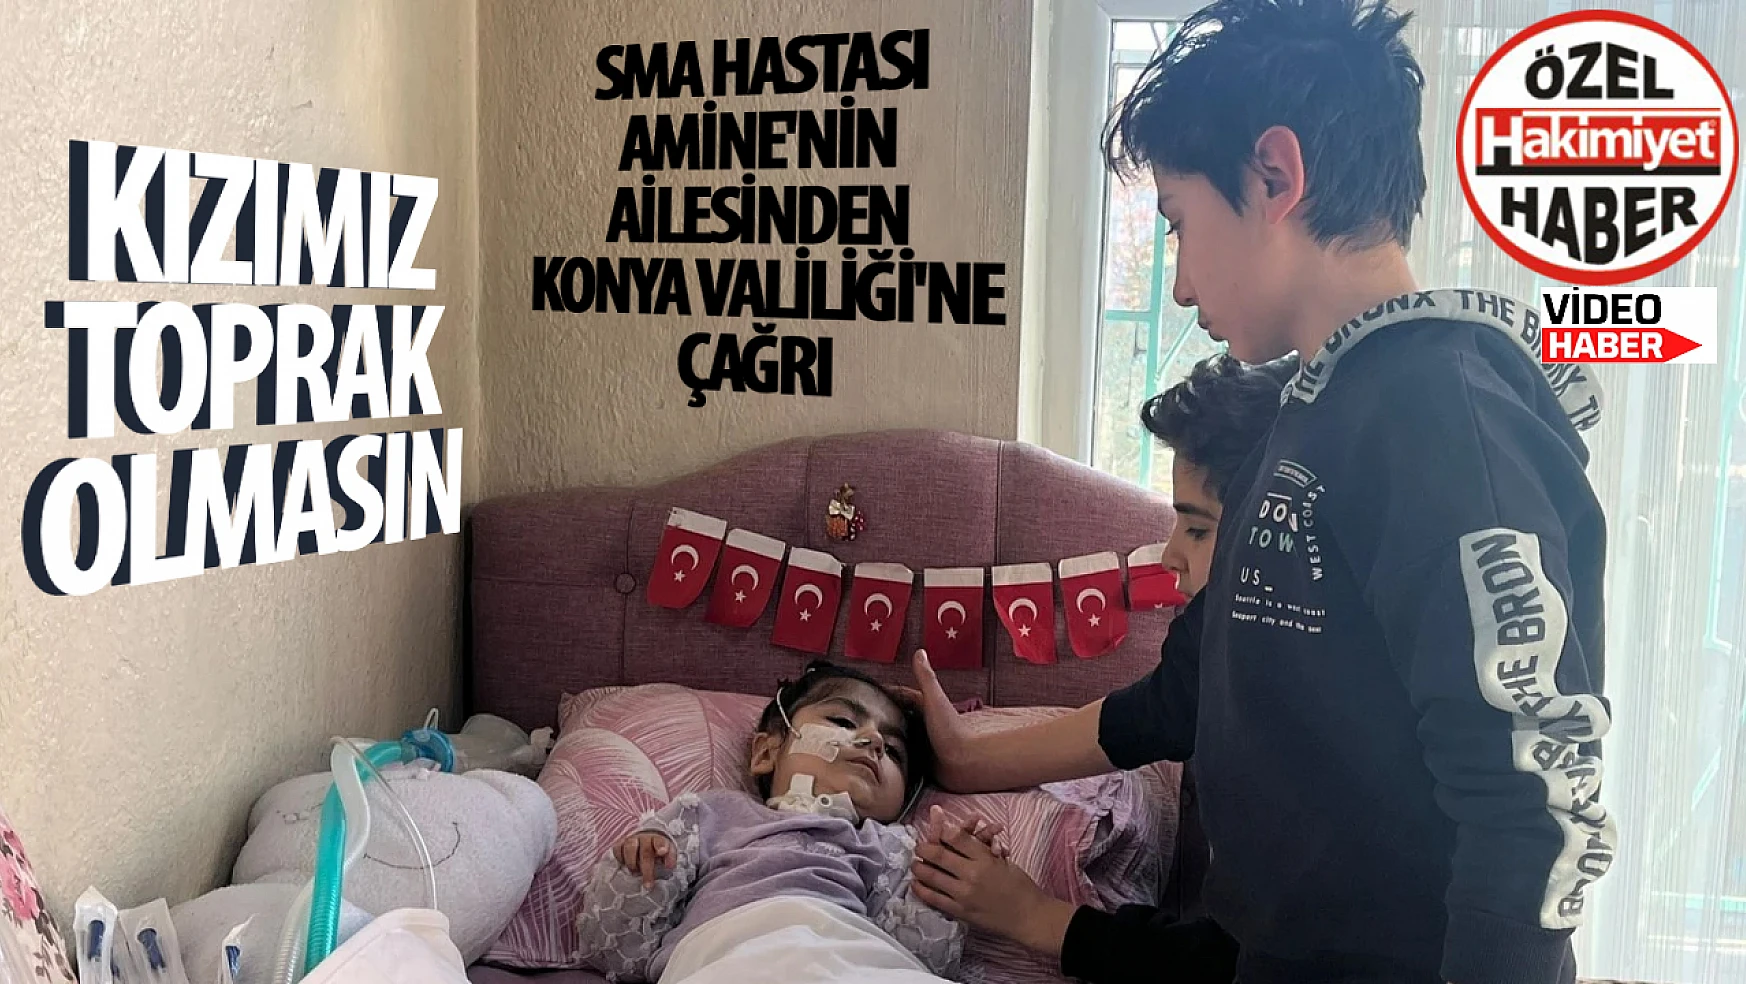 SMA hastası Amine'nin ailesinden Konya Valiliği'ne çağrı: 'Kızımız toprak olmasın'